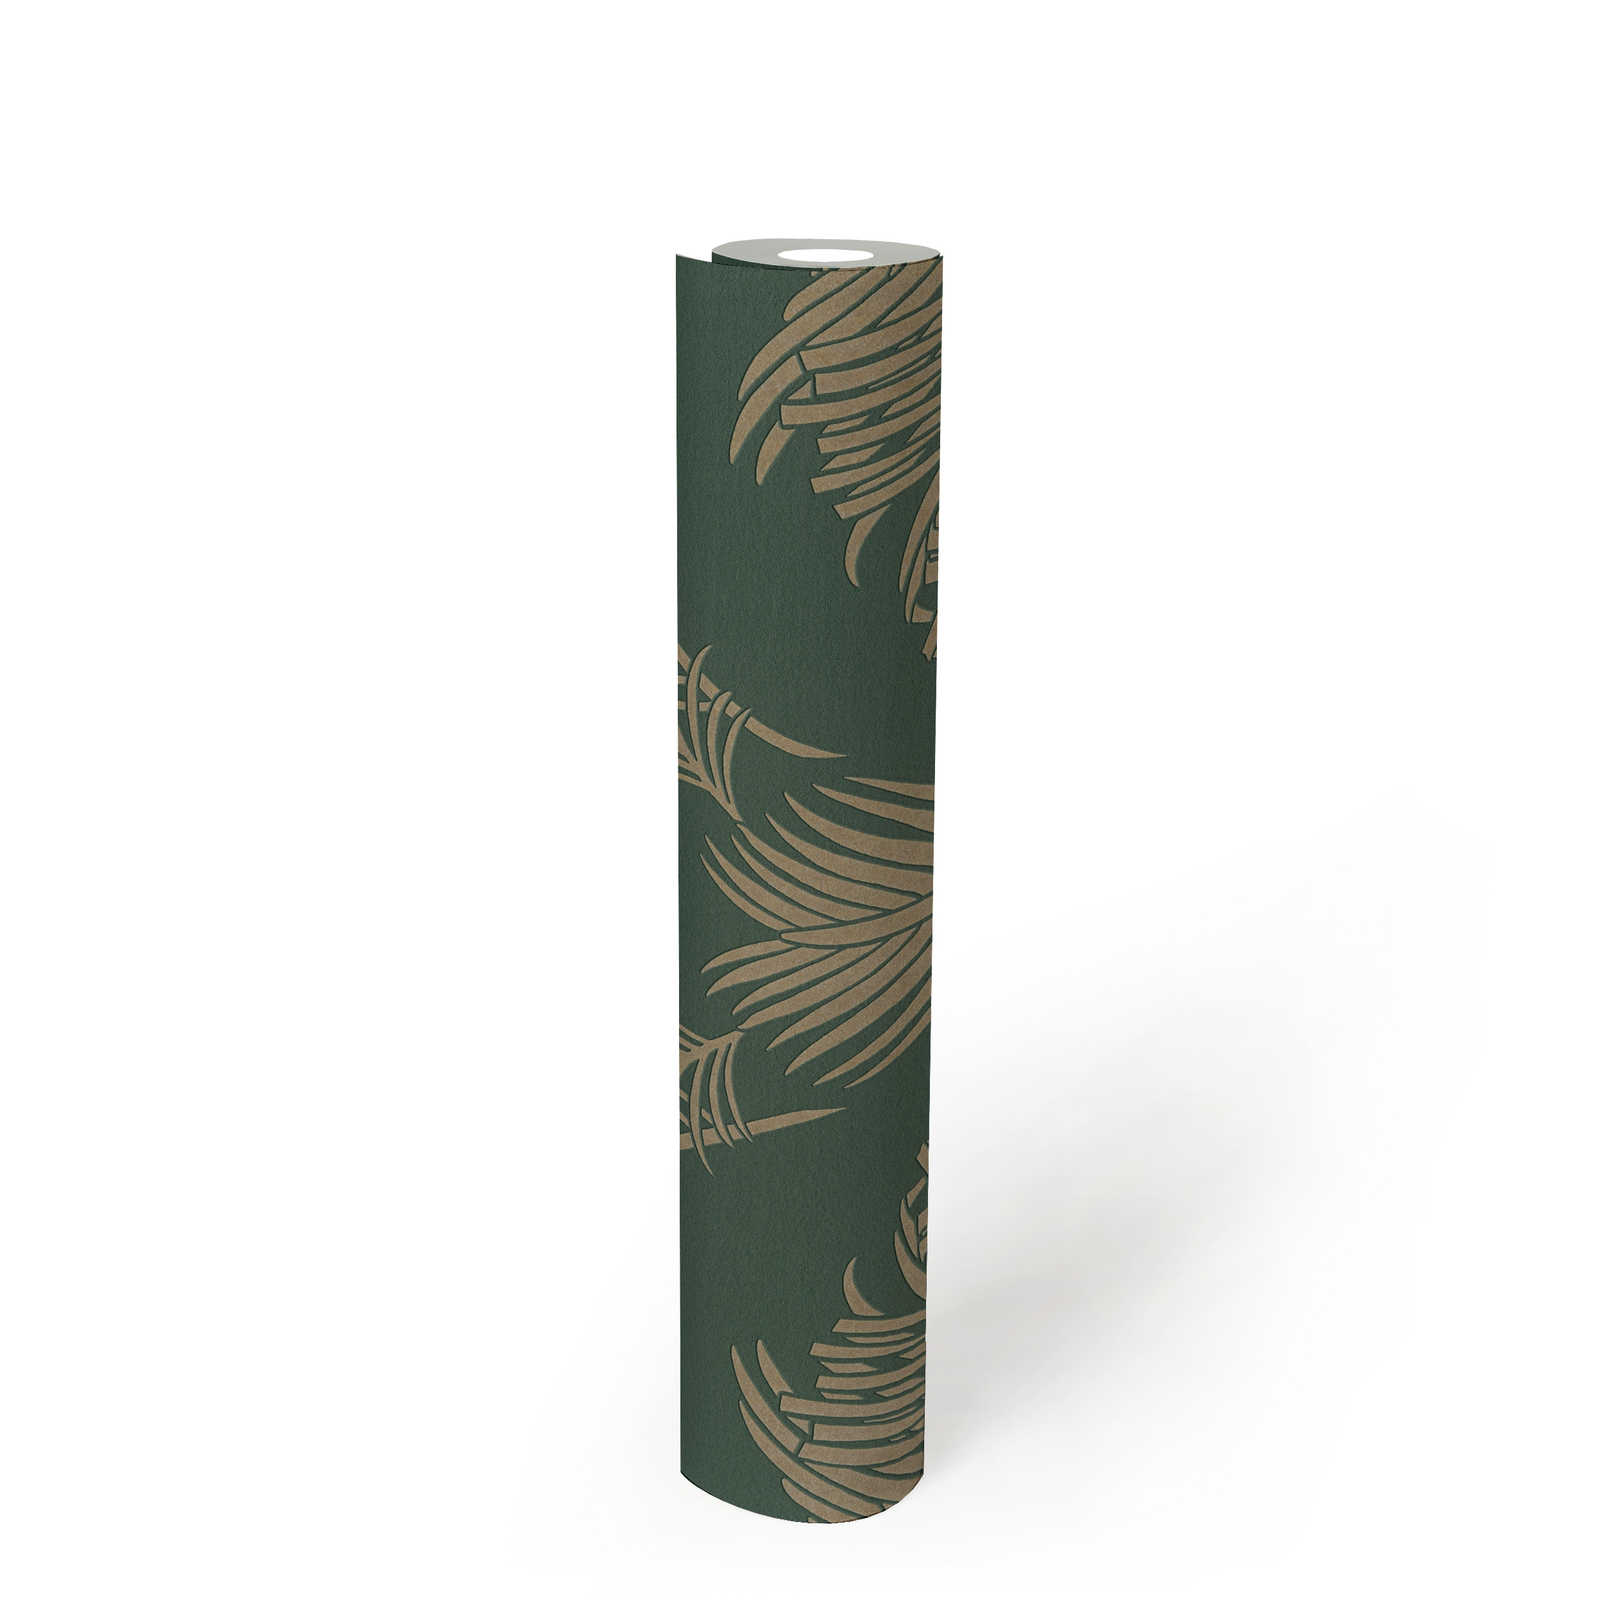             Vliesbehang fir groen & goud met palmblad motief - groen, metallic
        